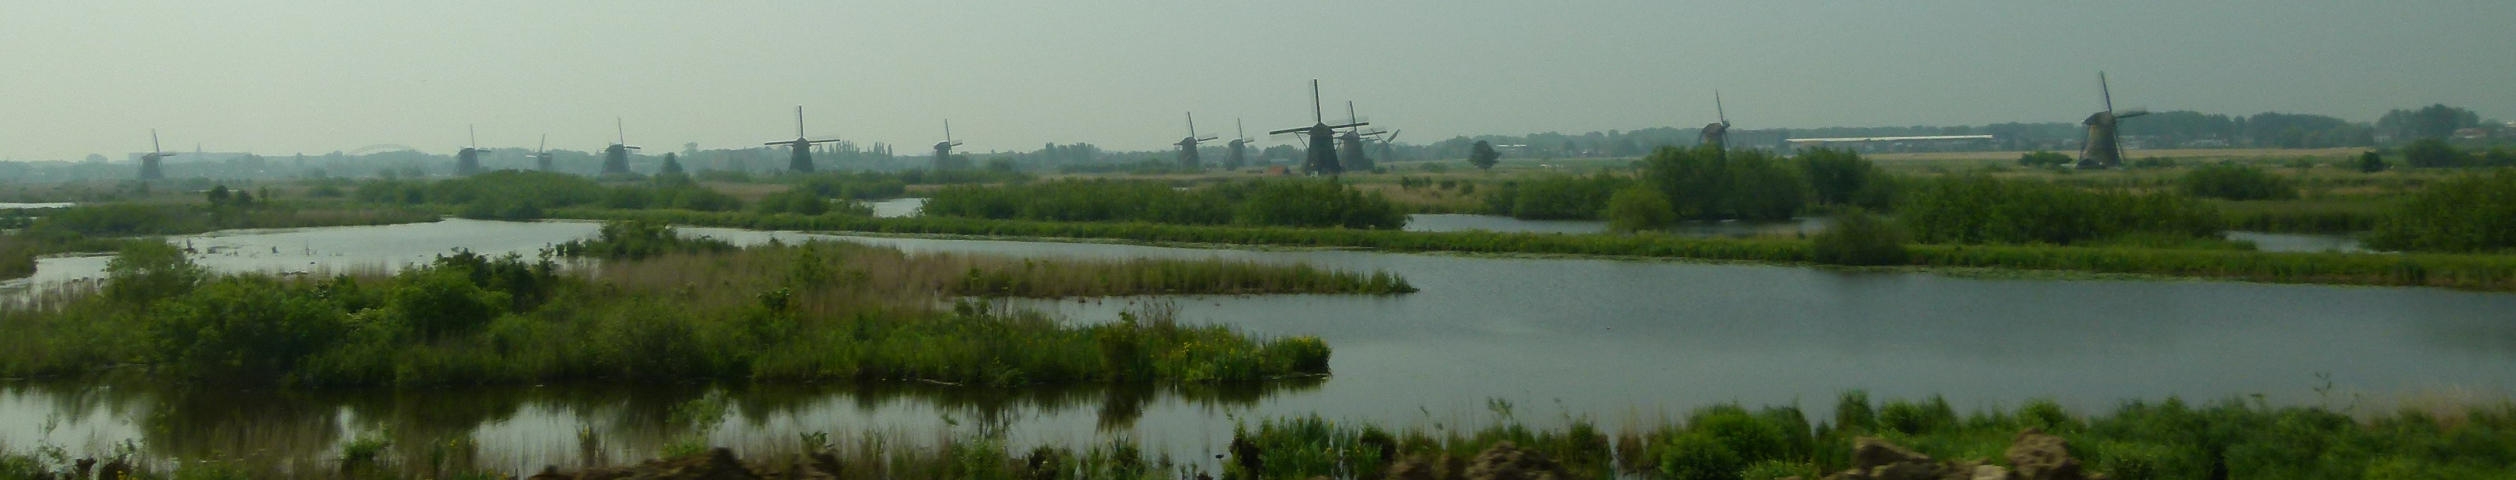 Kinderdijk-panorama